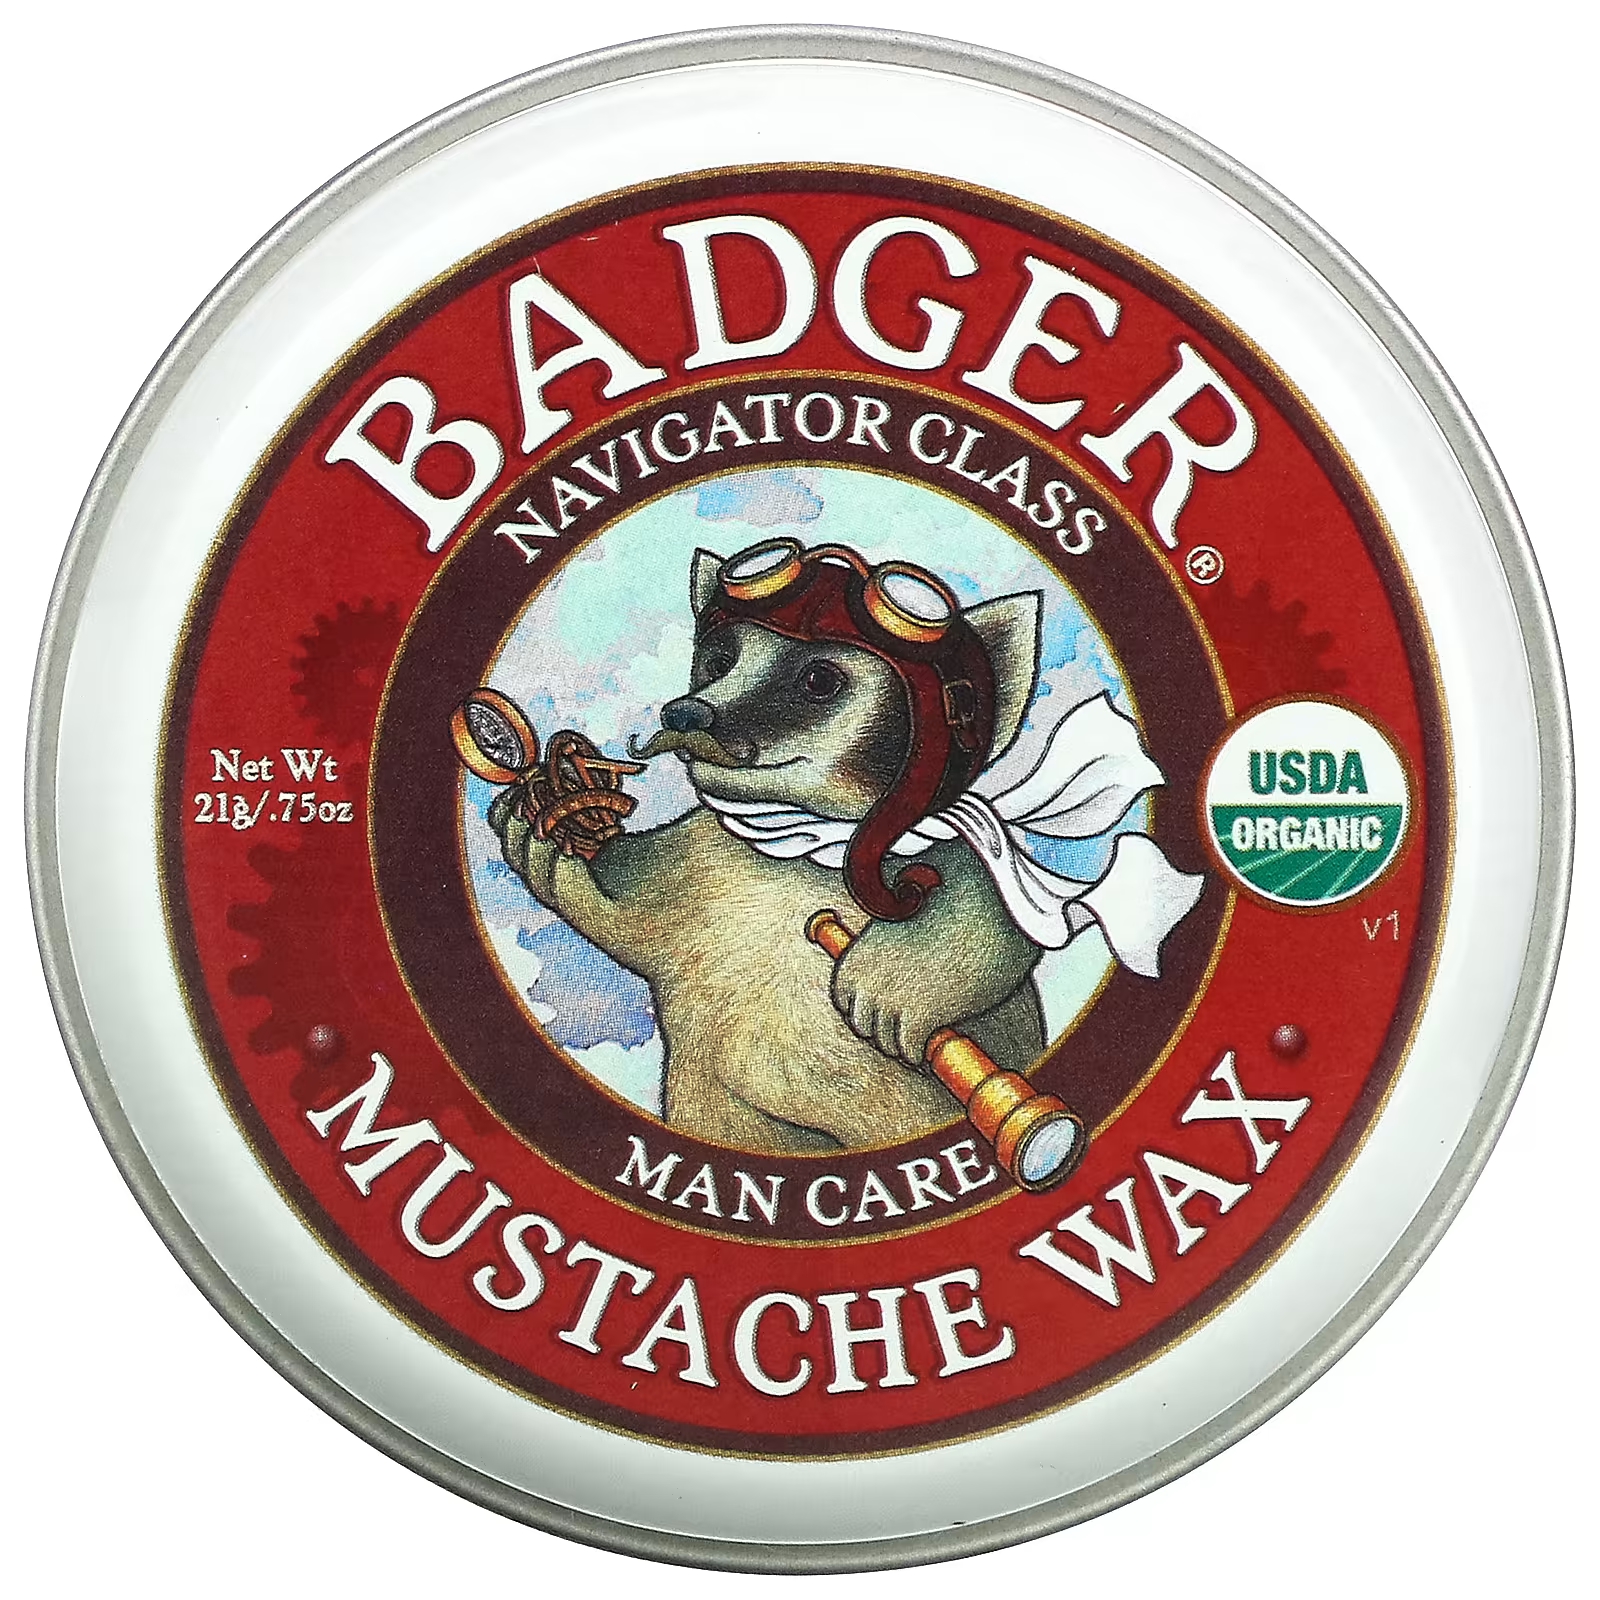 цена Воск для усов Badger Company органический